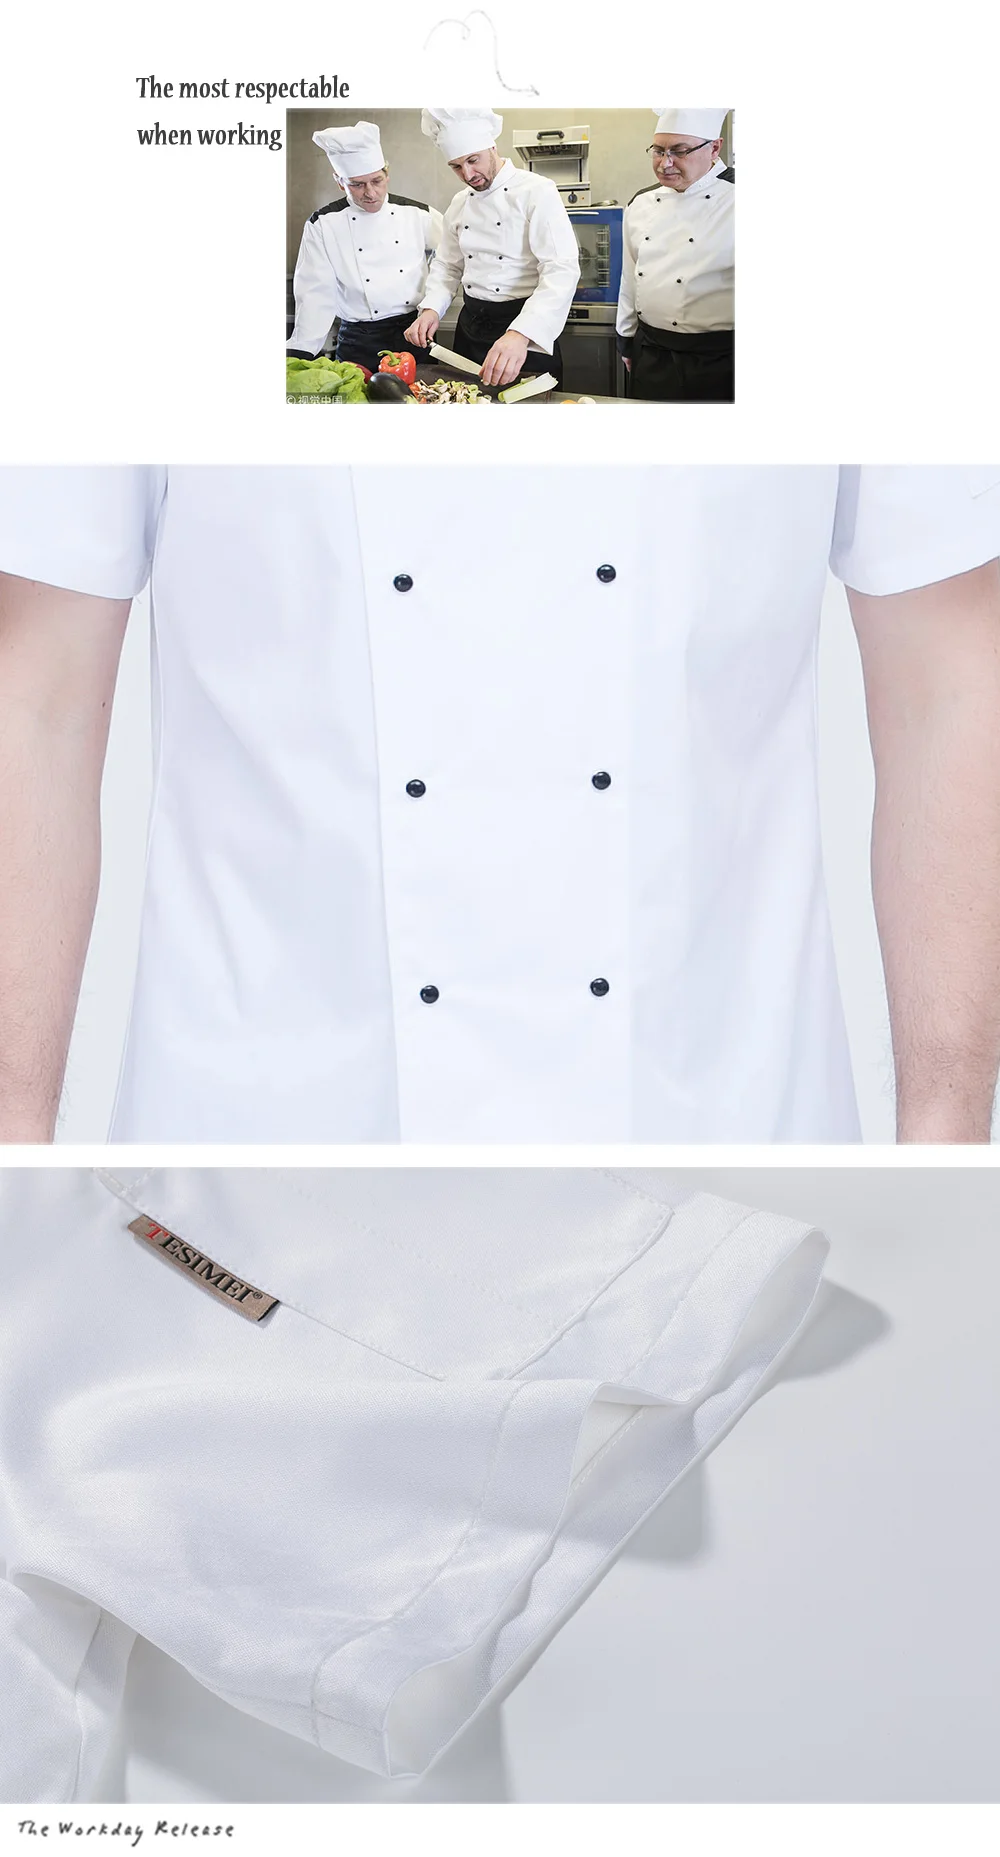 M-4XL высокое качество поварская одежда двубортная для отелей для кейтеринга Кухня форма офицантки рубашка для официантов Белый Шеф-повар